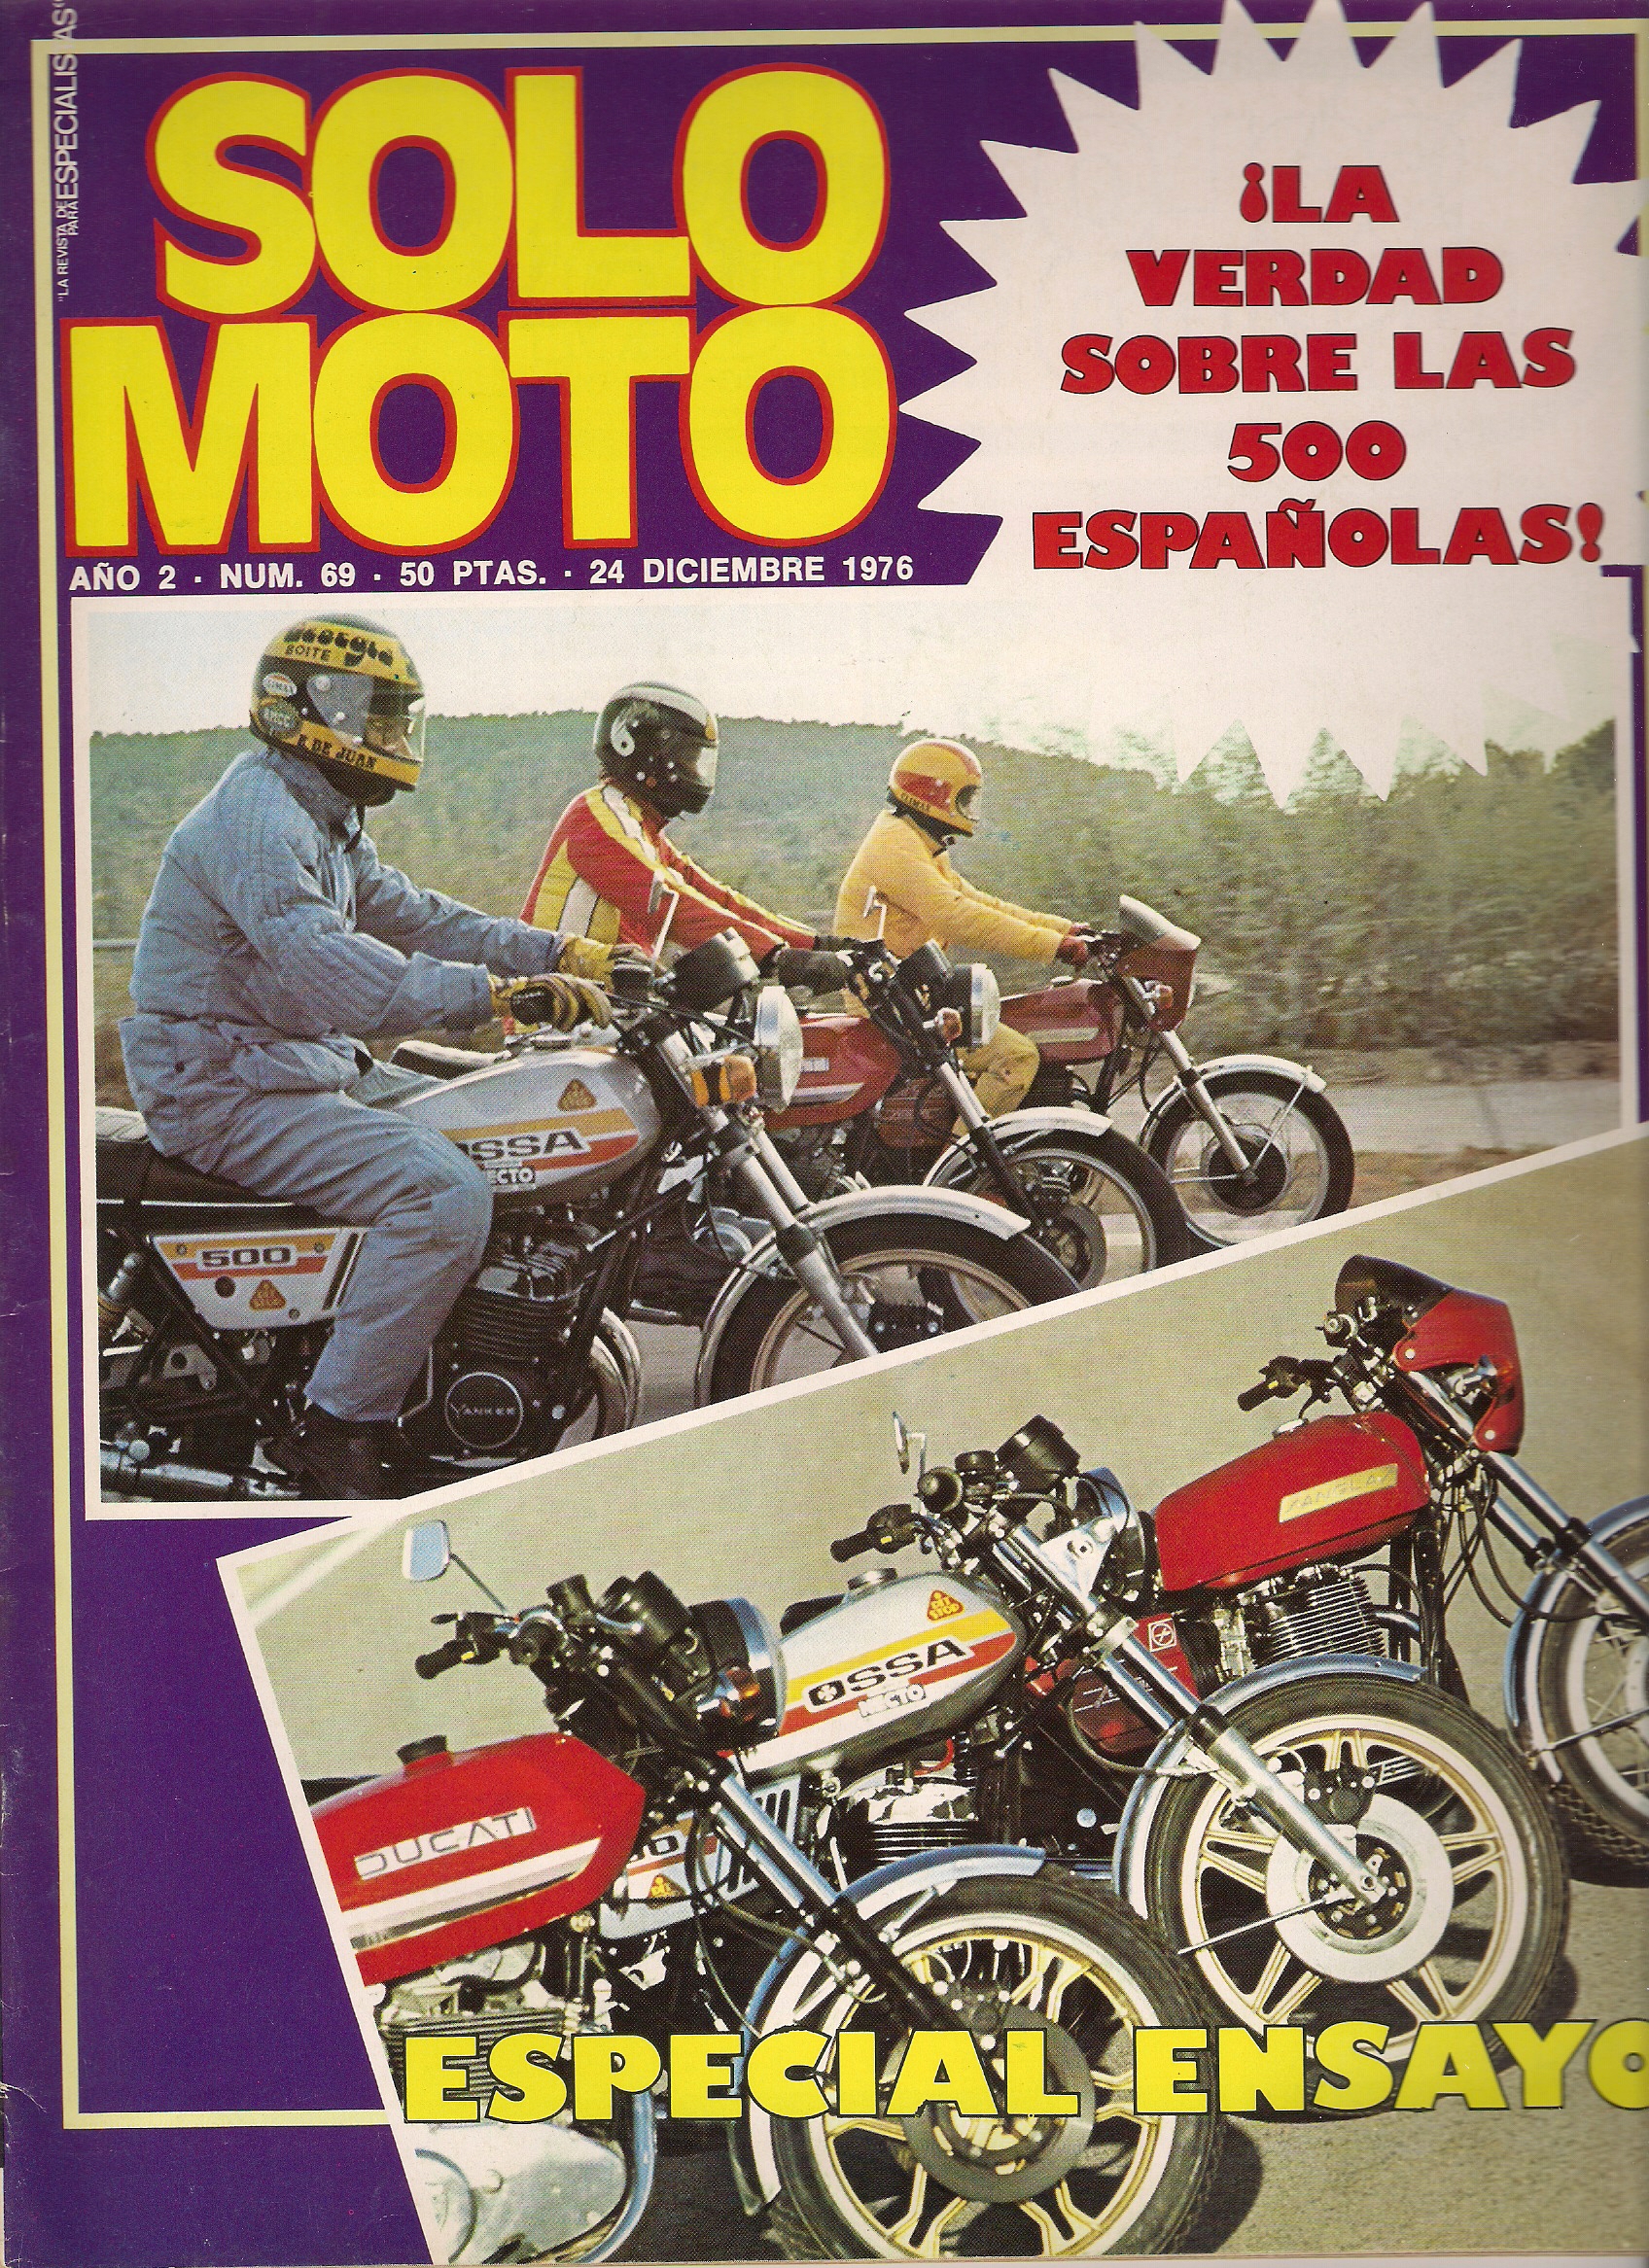 Portada ensayo Solo Moto 3 500cc Españolas0001